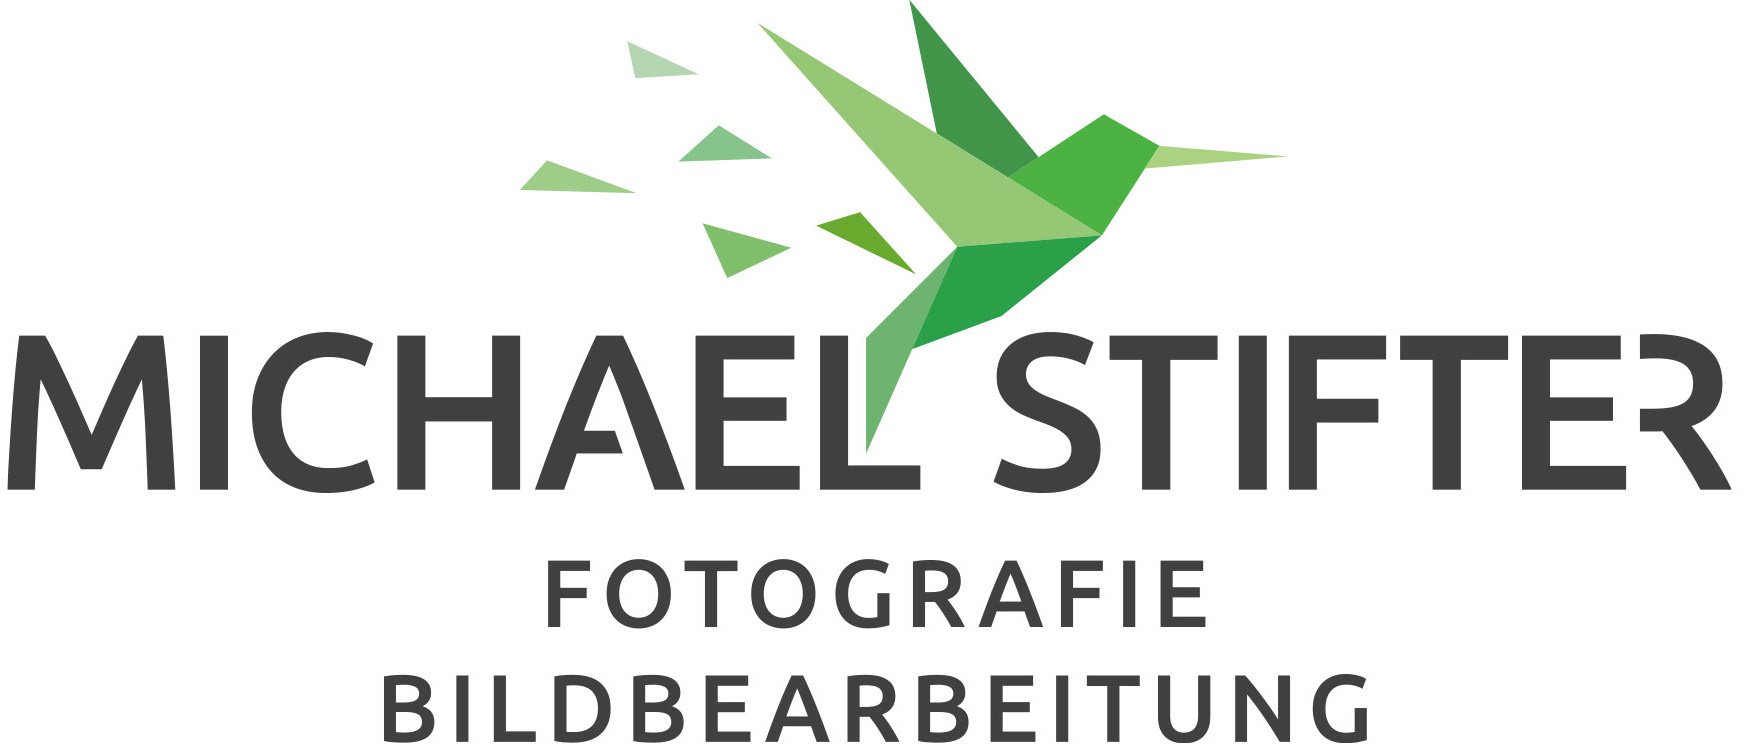 Michael Stifter - Fotografie & Bildbearbeitung